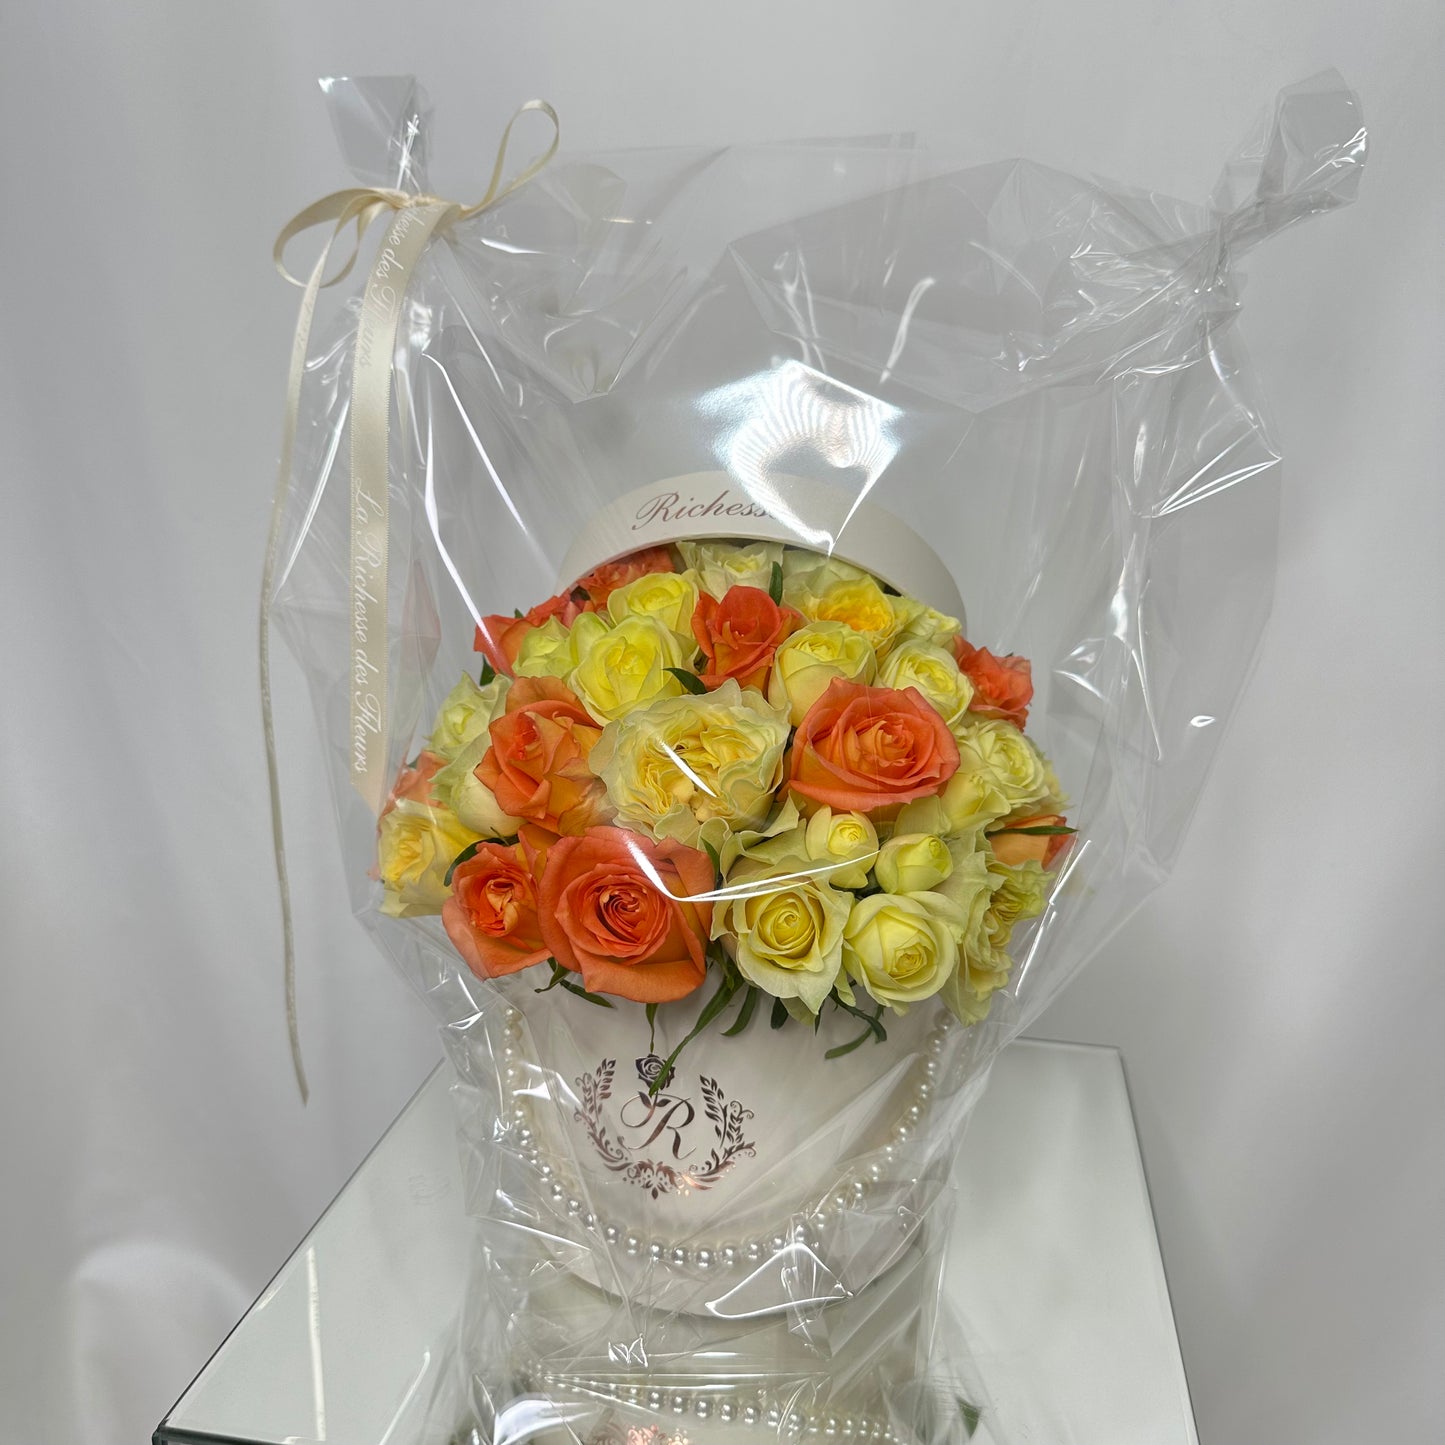 オレンジバラと黄色いバラのアレンジメントSサイズ【H様オーダーメイド】